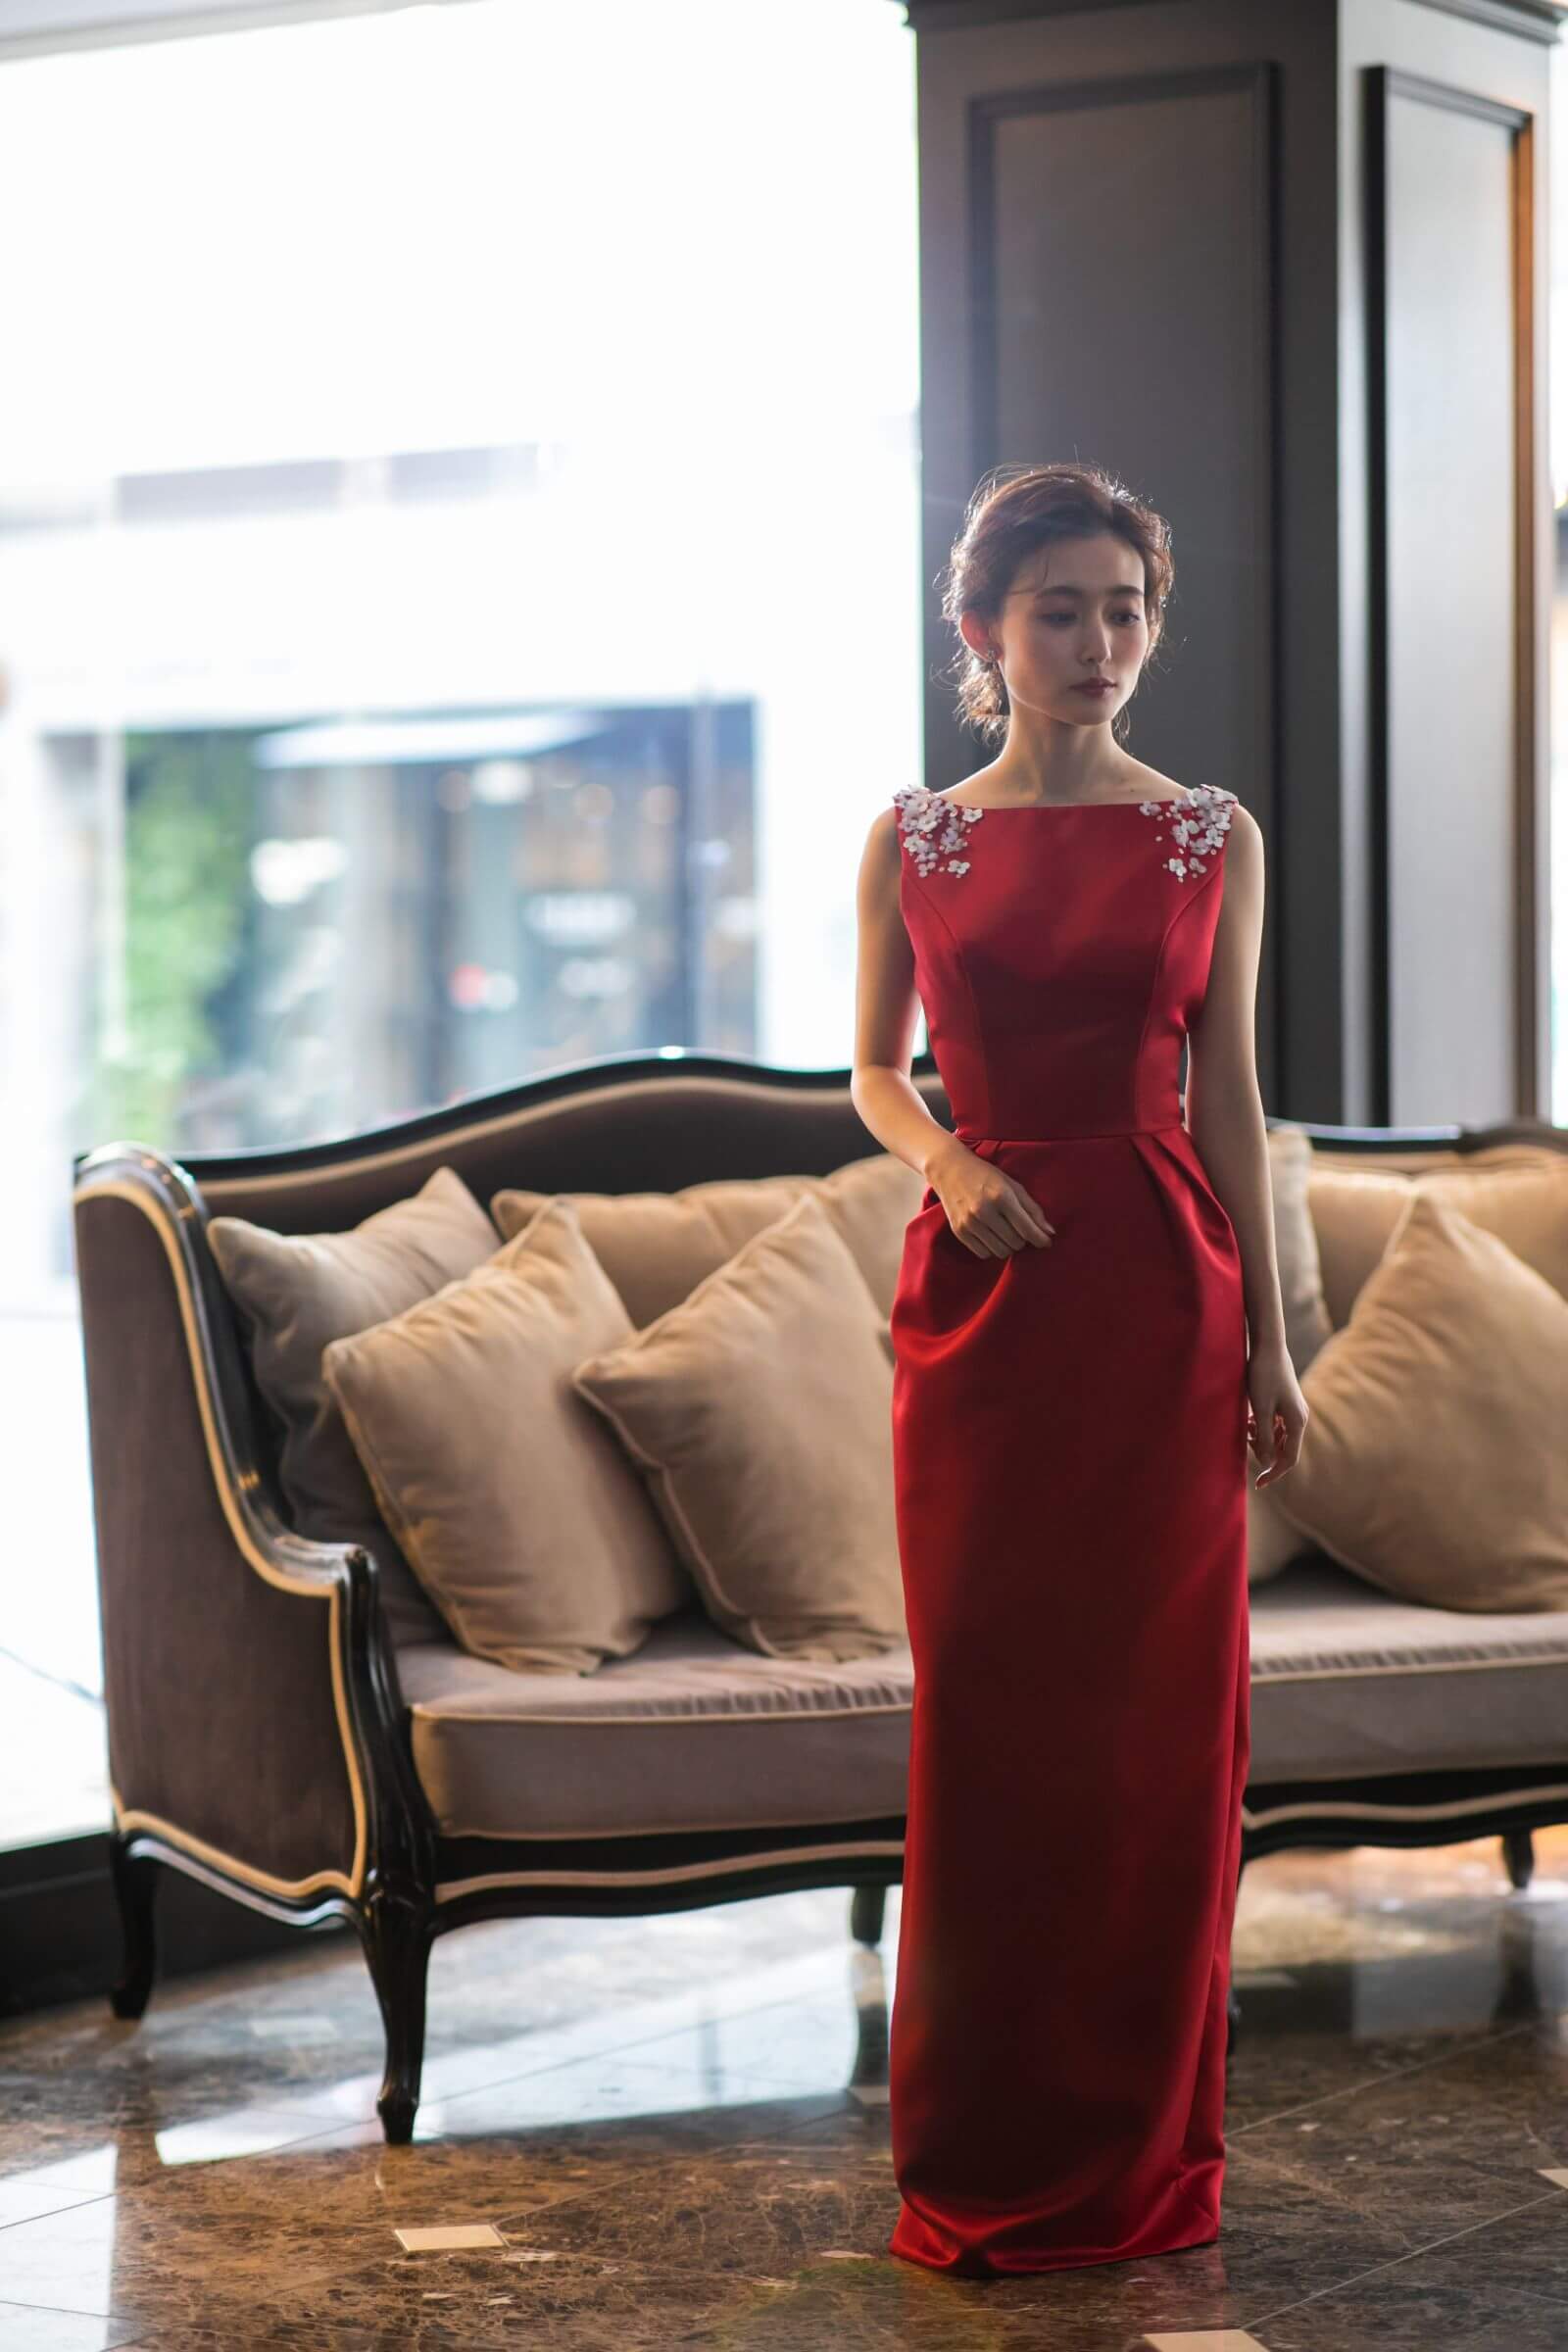 JUNO(ジュノ)オリジナルカラードレス“Henri” 艶やかな赤いドレスを 